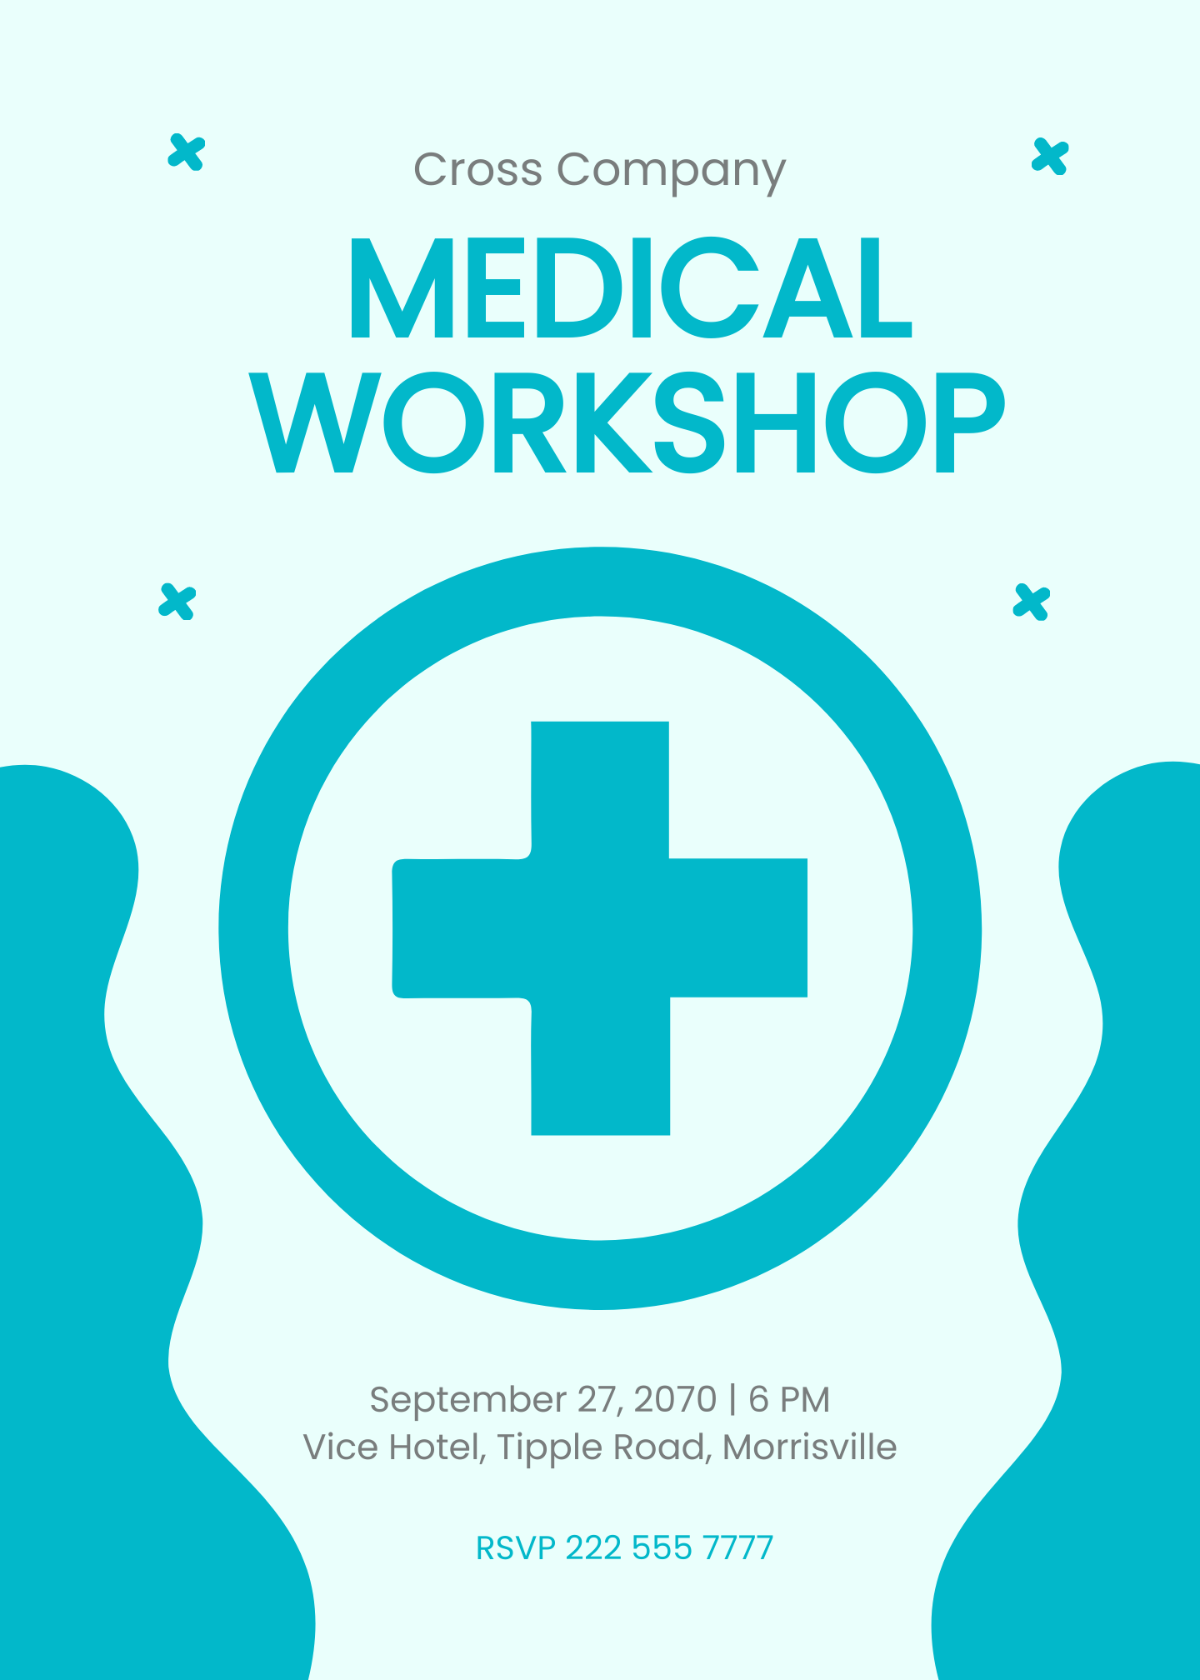 Medical Workshop Invitation Template